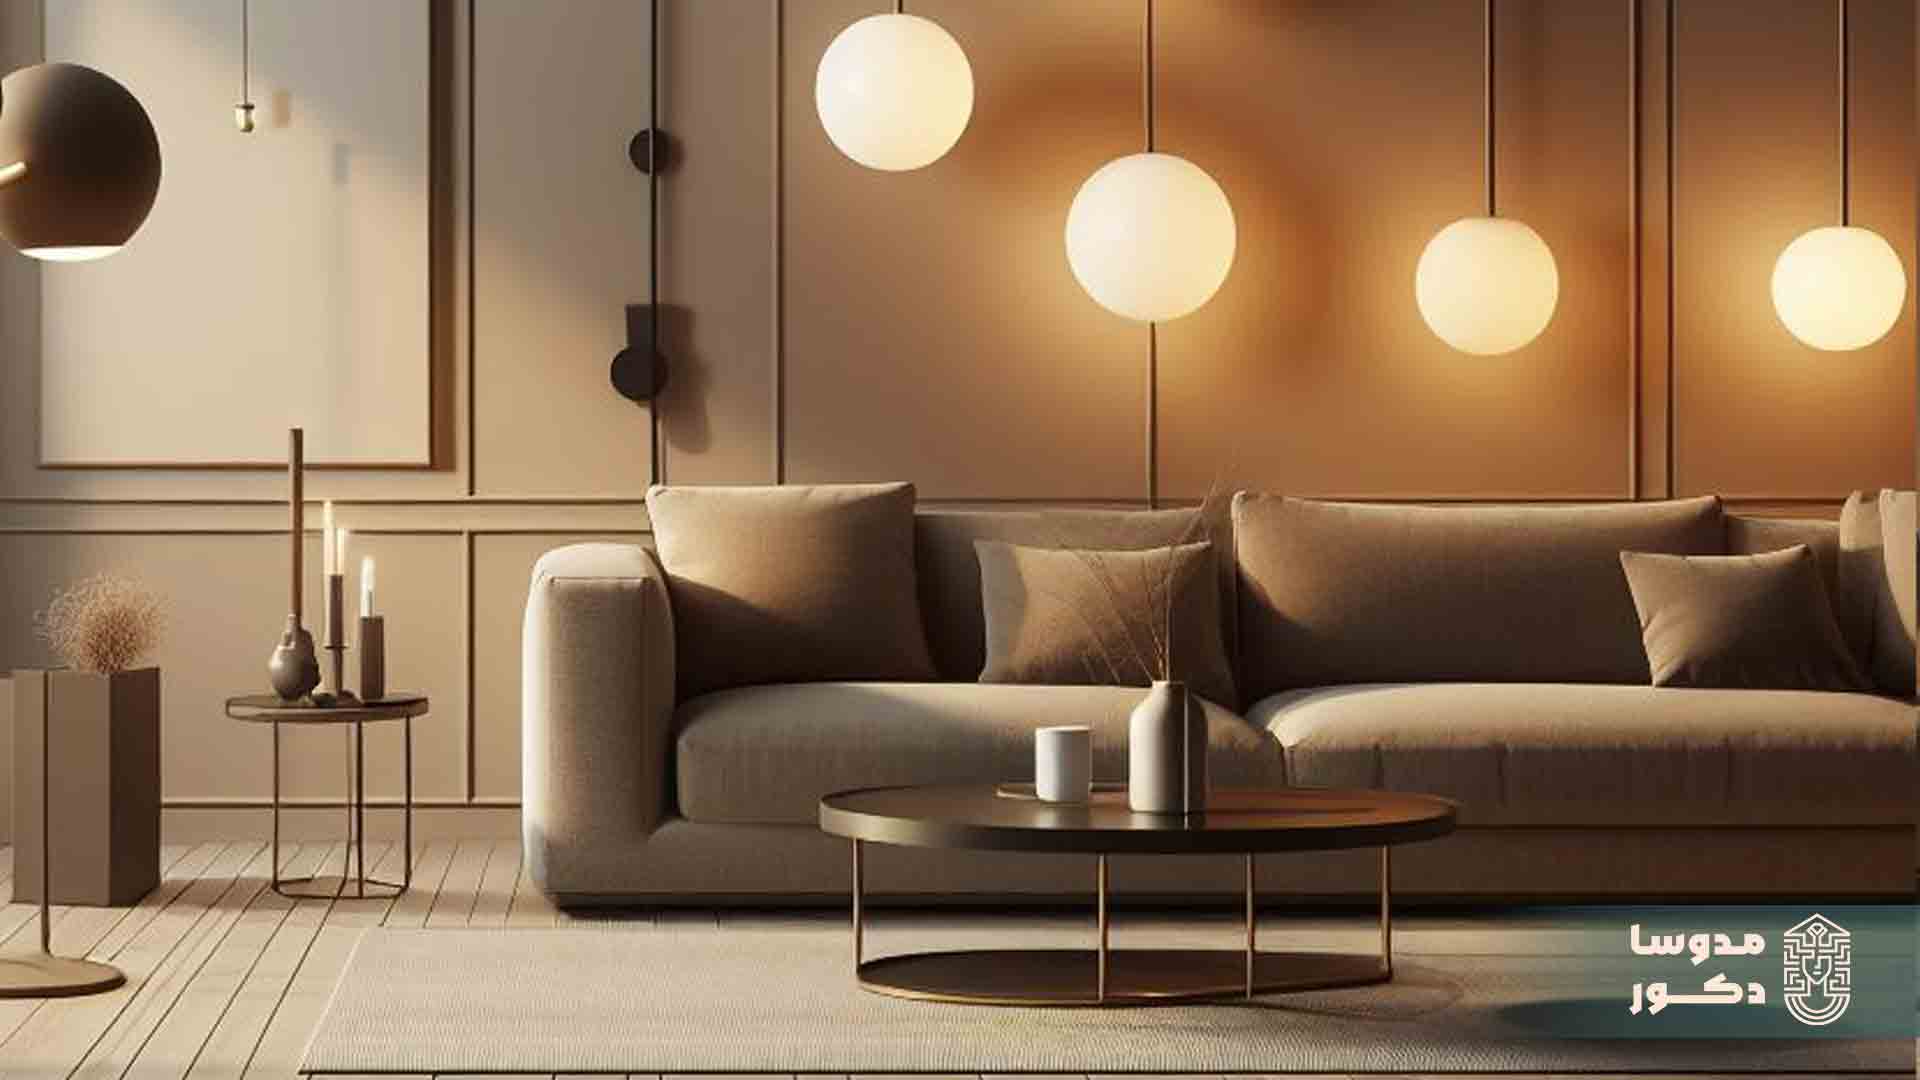 نورپردازی در طراحی داخلی خانه